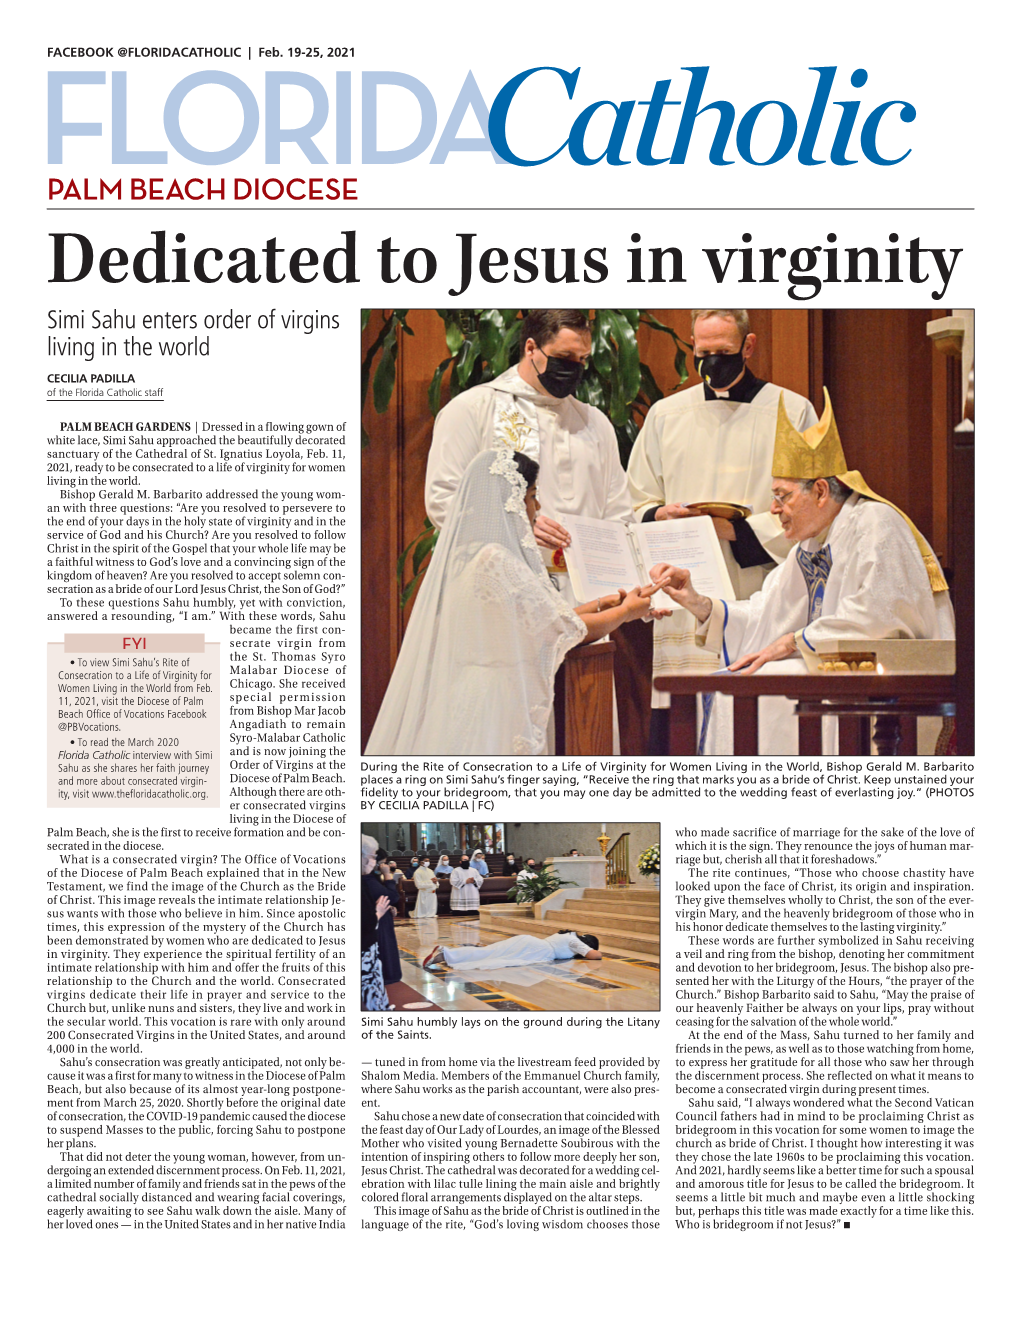 Dedicated to Jesus in Virginity Simi Sahu Enters Order of Virgins Living in the World